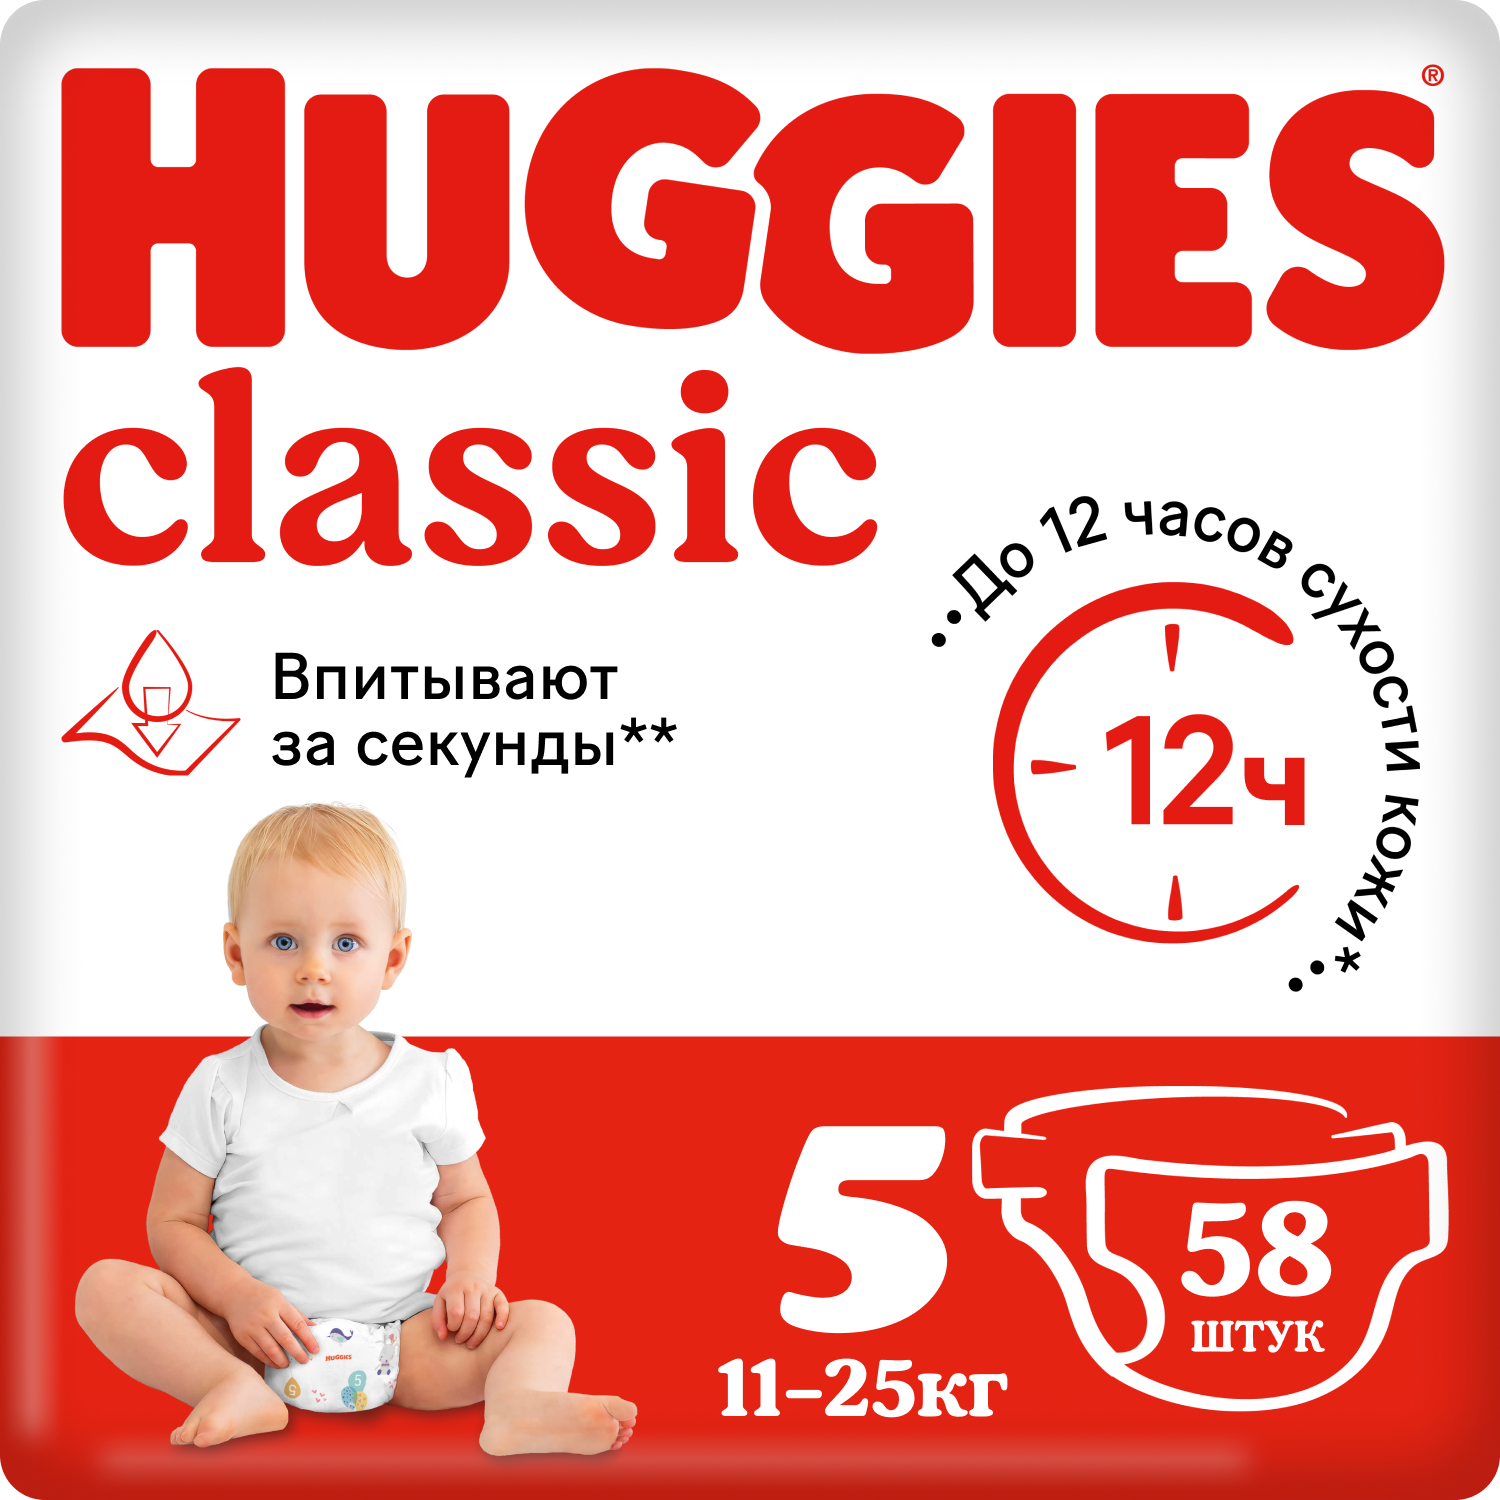 Подгузники Huggies Classic 5 (11-25 кг), 58 шт. подгузники huggies classic 3 4 9 кг 58 шт